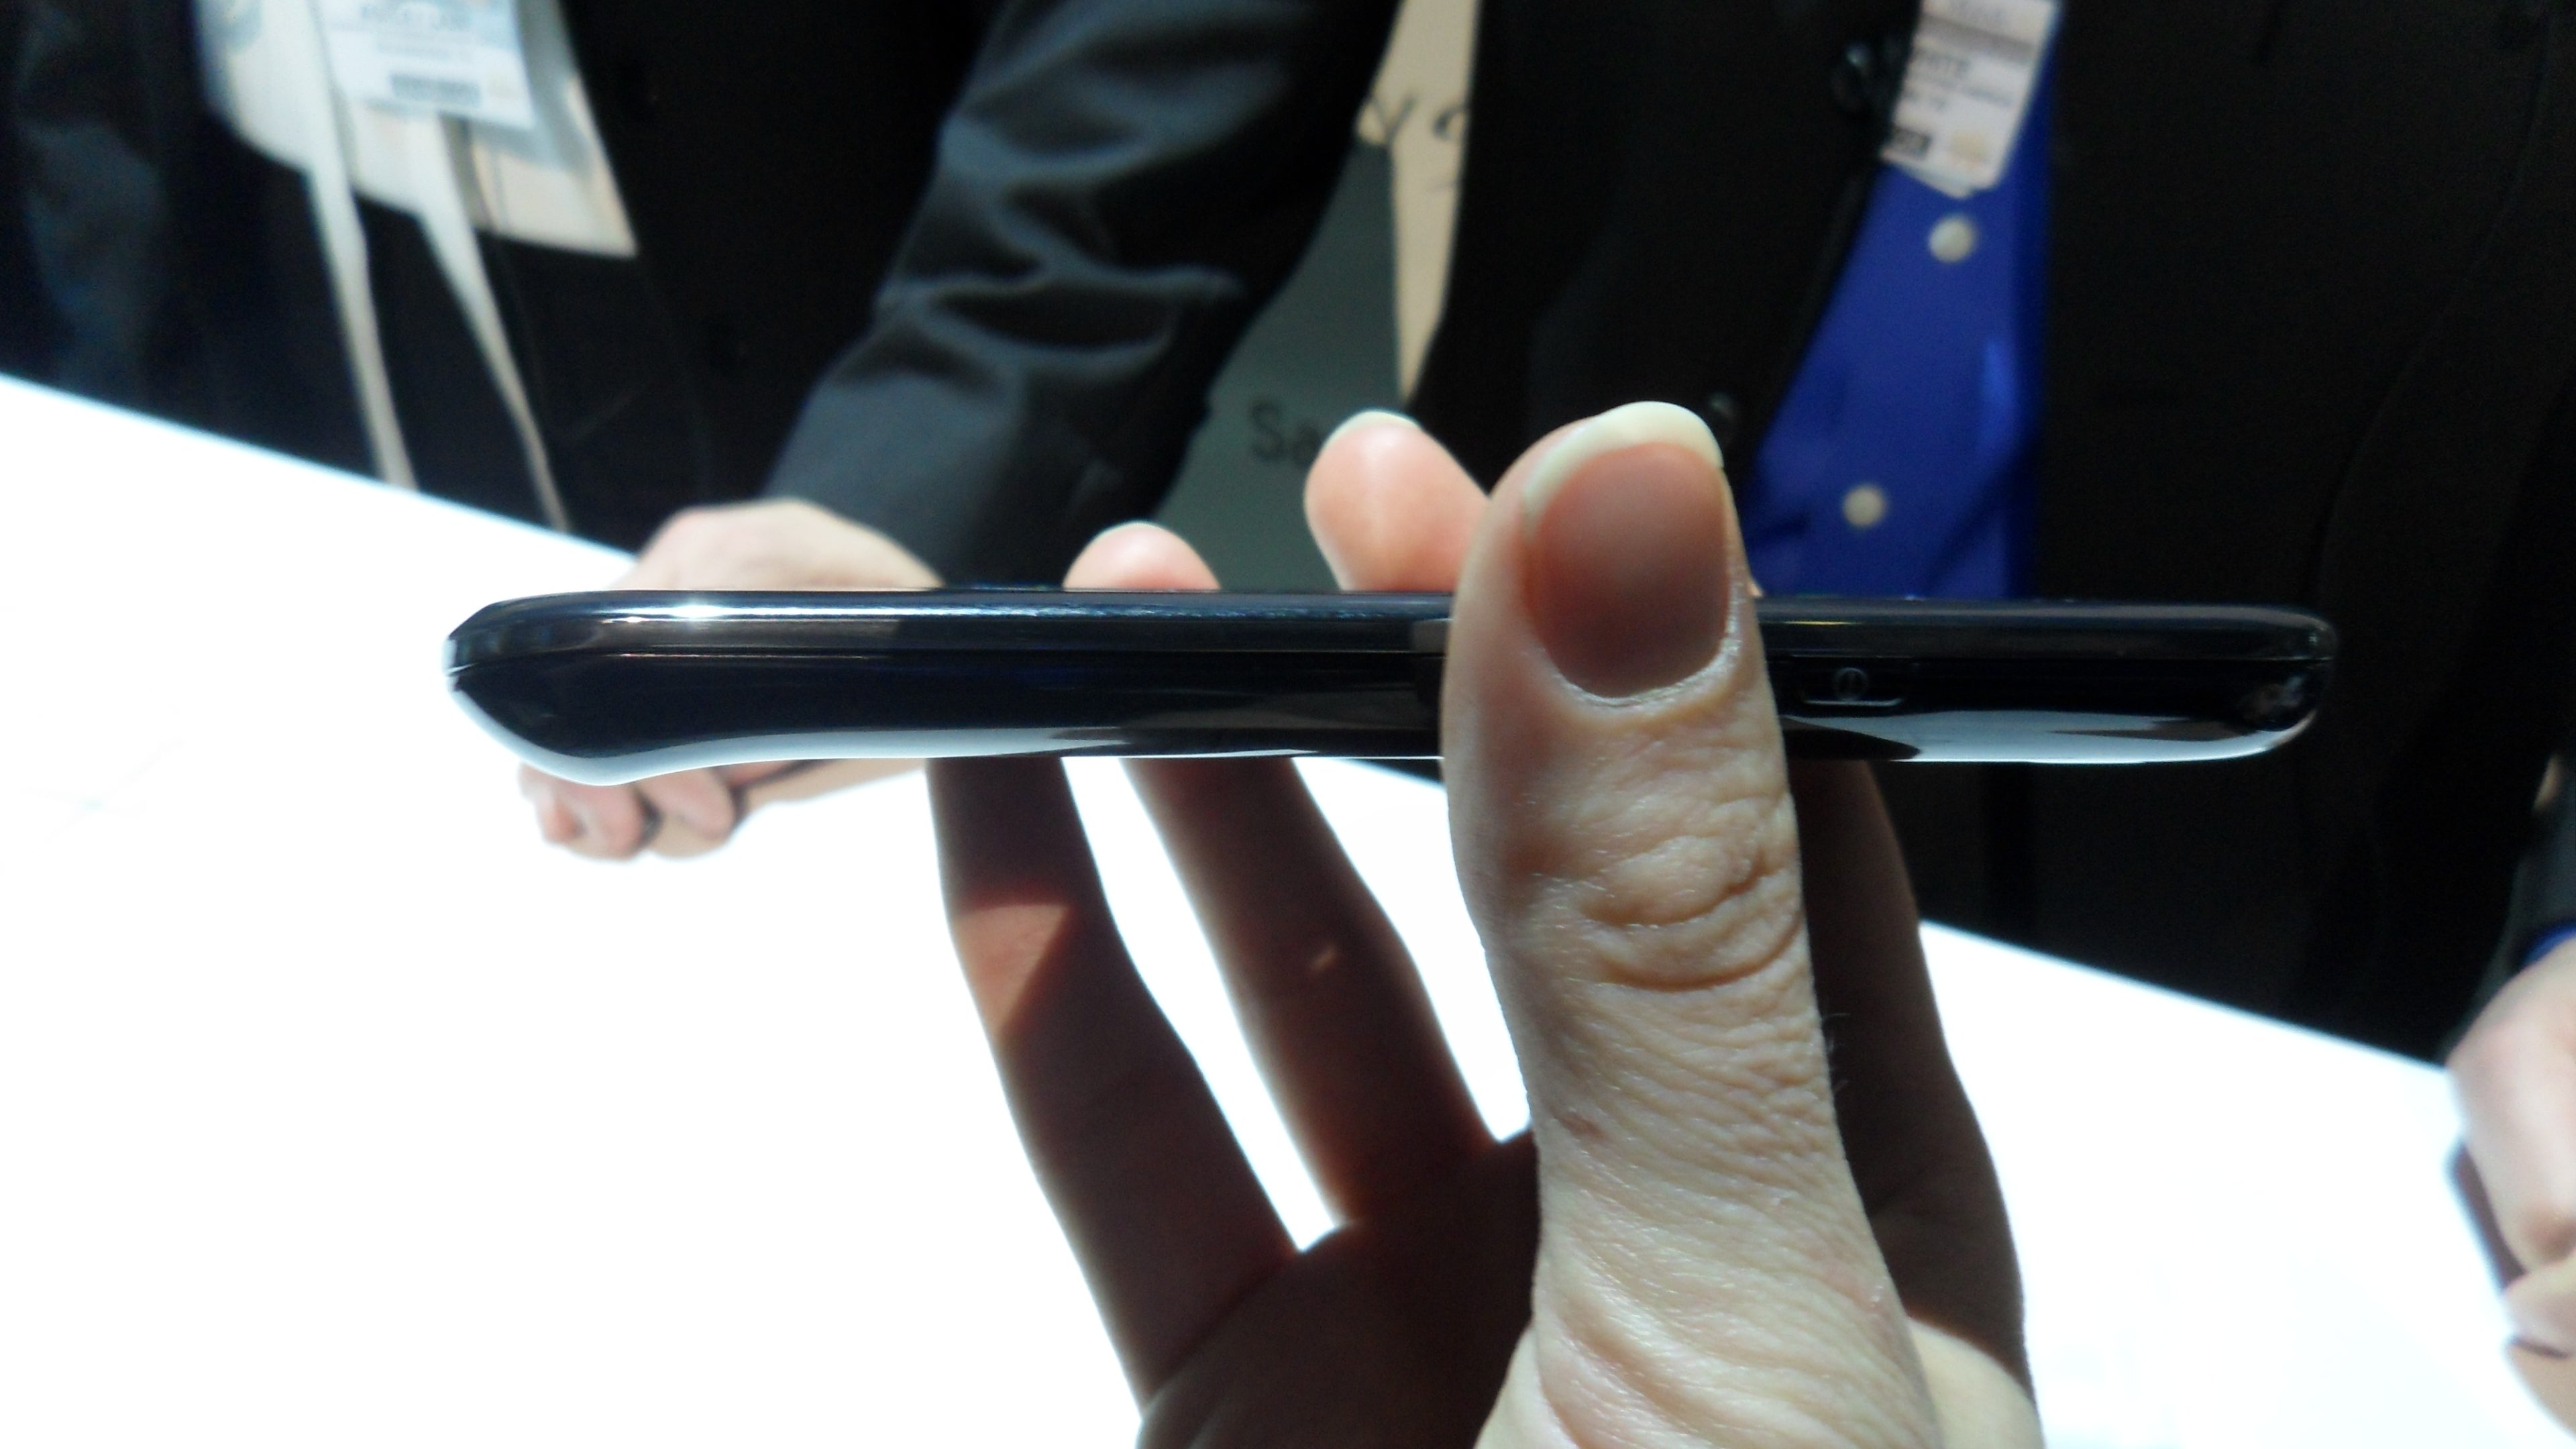 Во вторник на выставке CTIA Samsung представила свой самый мощный телефон на Android,   Galaxy S   ,  Работающий на Android 2